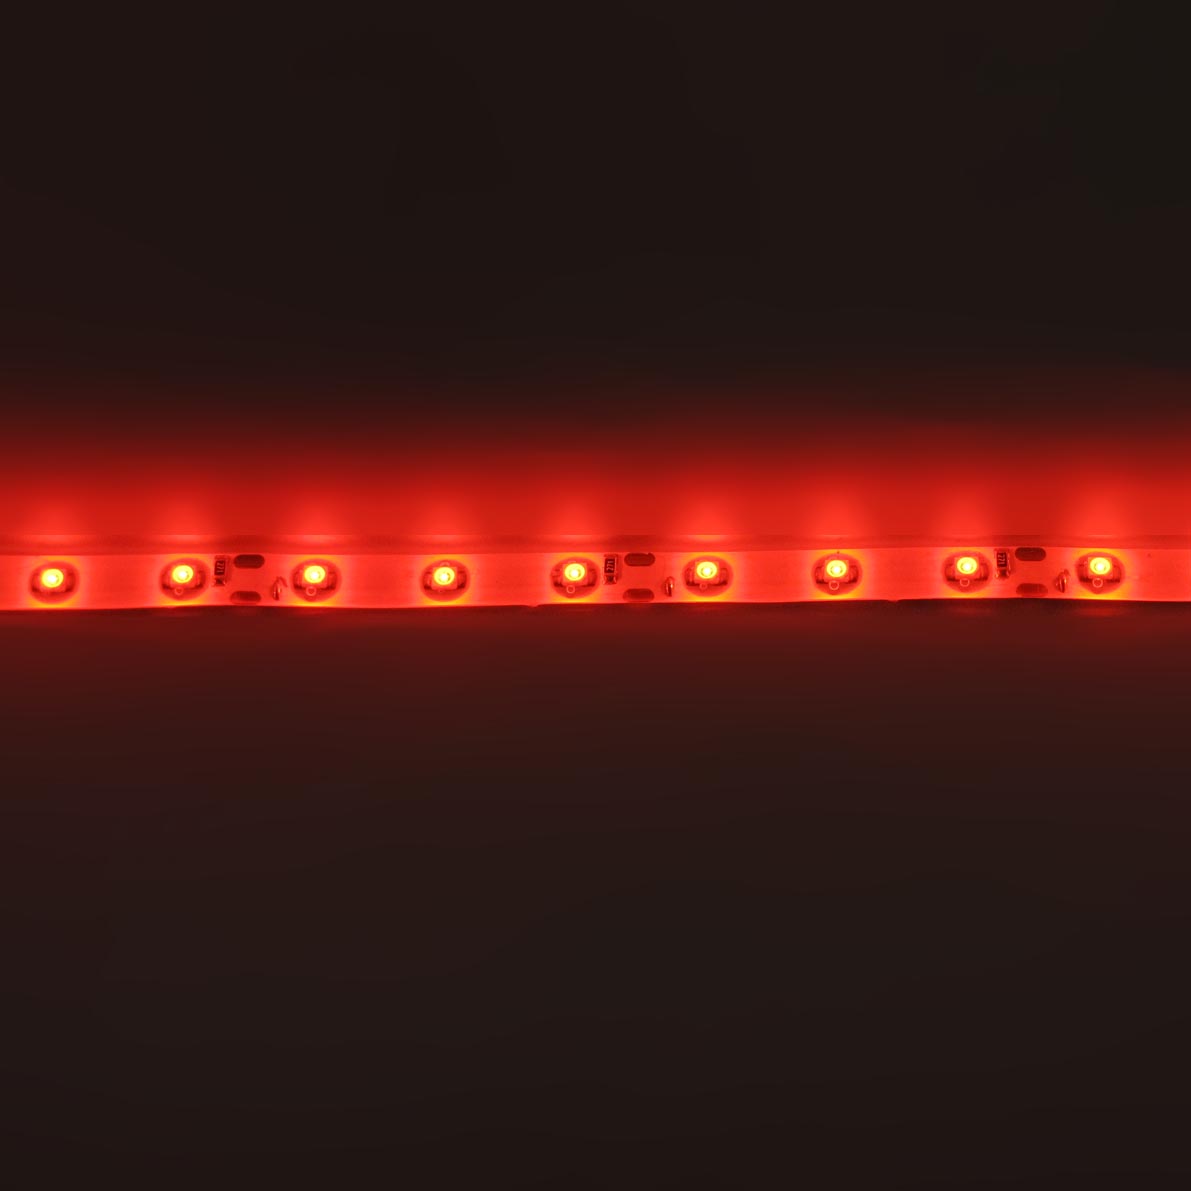 светодиодная лента standart class, 3528, 60led/m, red, 12v, ip65, артикул 52710